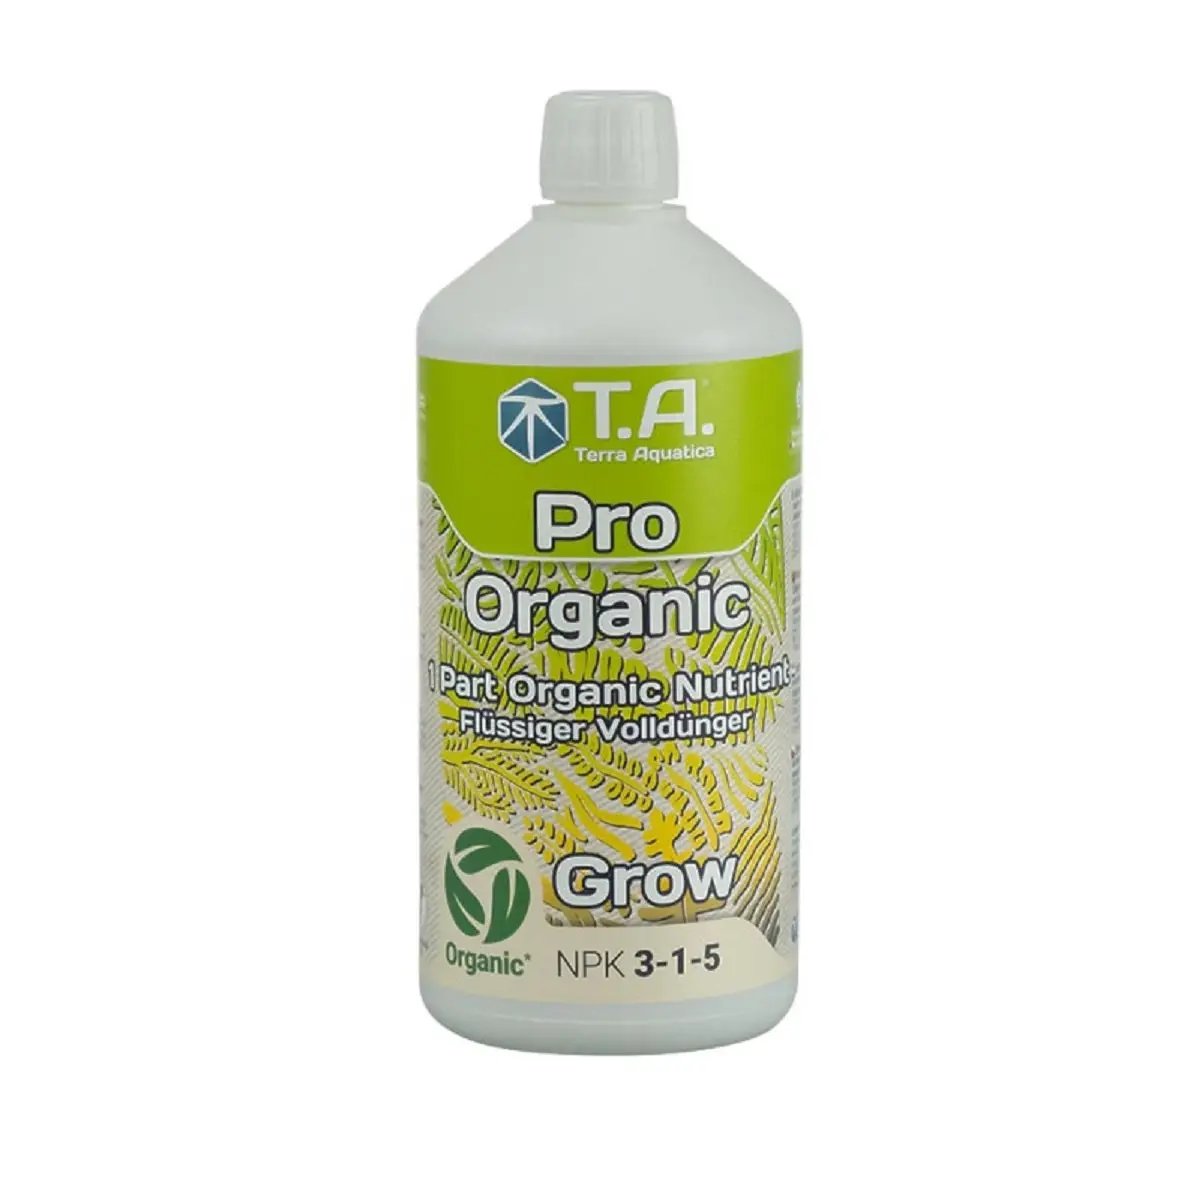 Engrais de croissance Terra Aquatica Organic Grow 1 litre